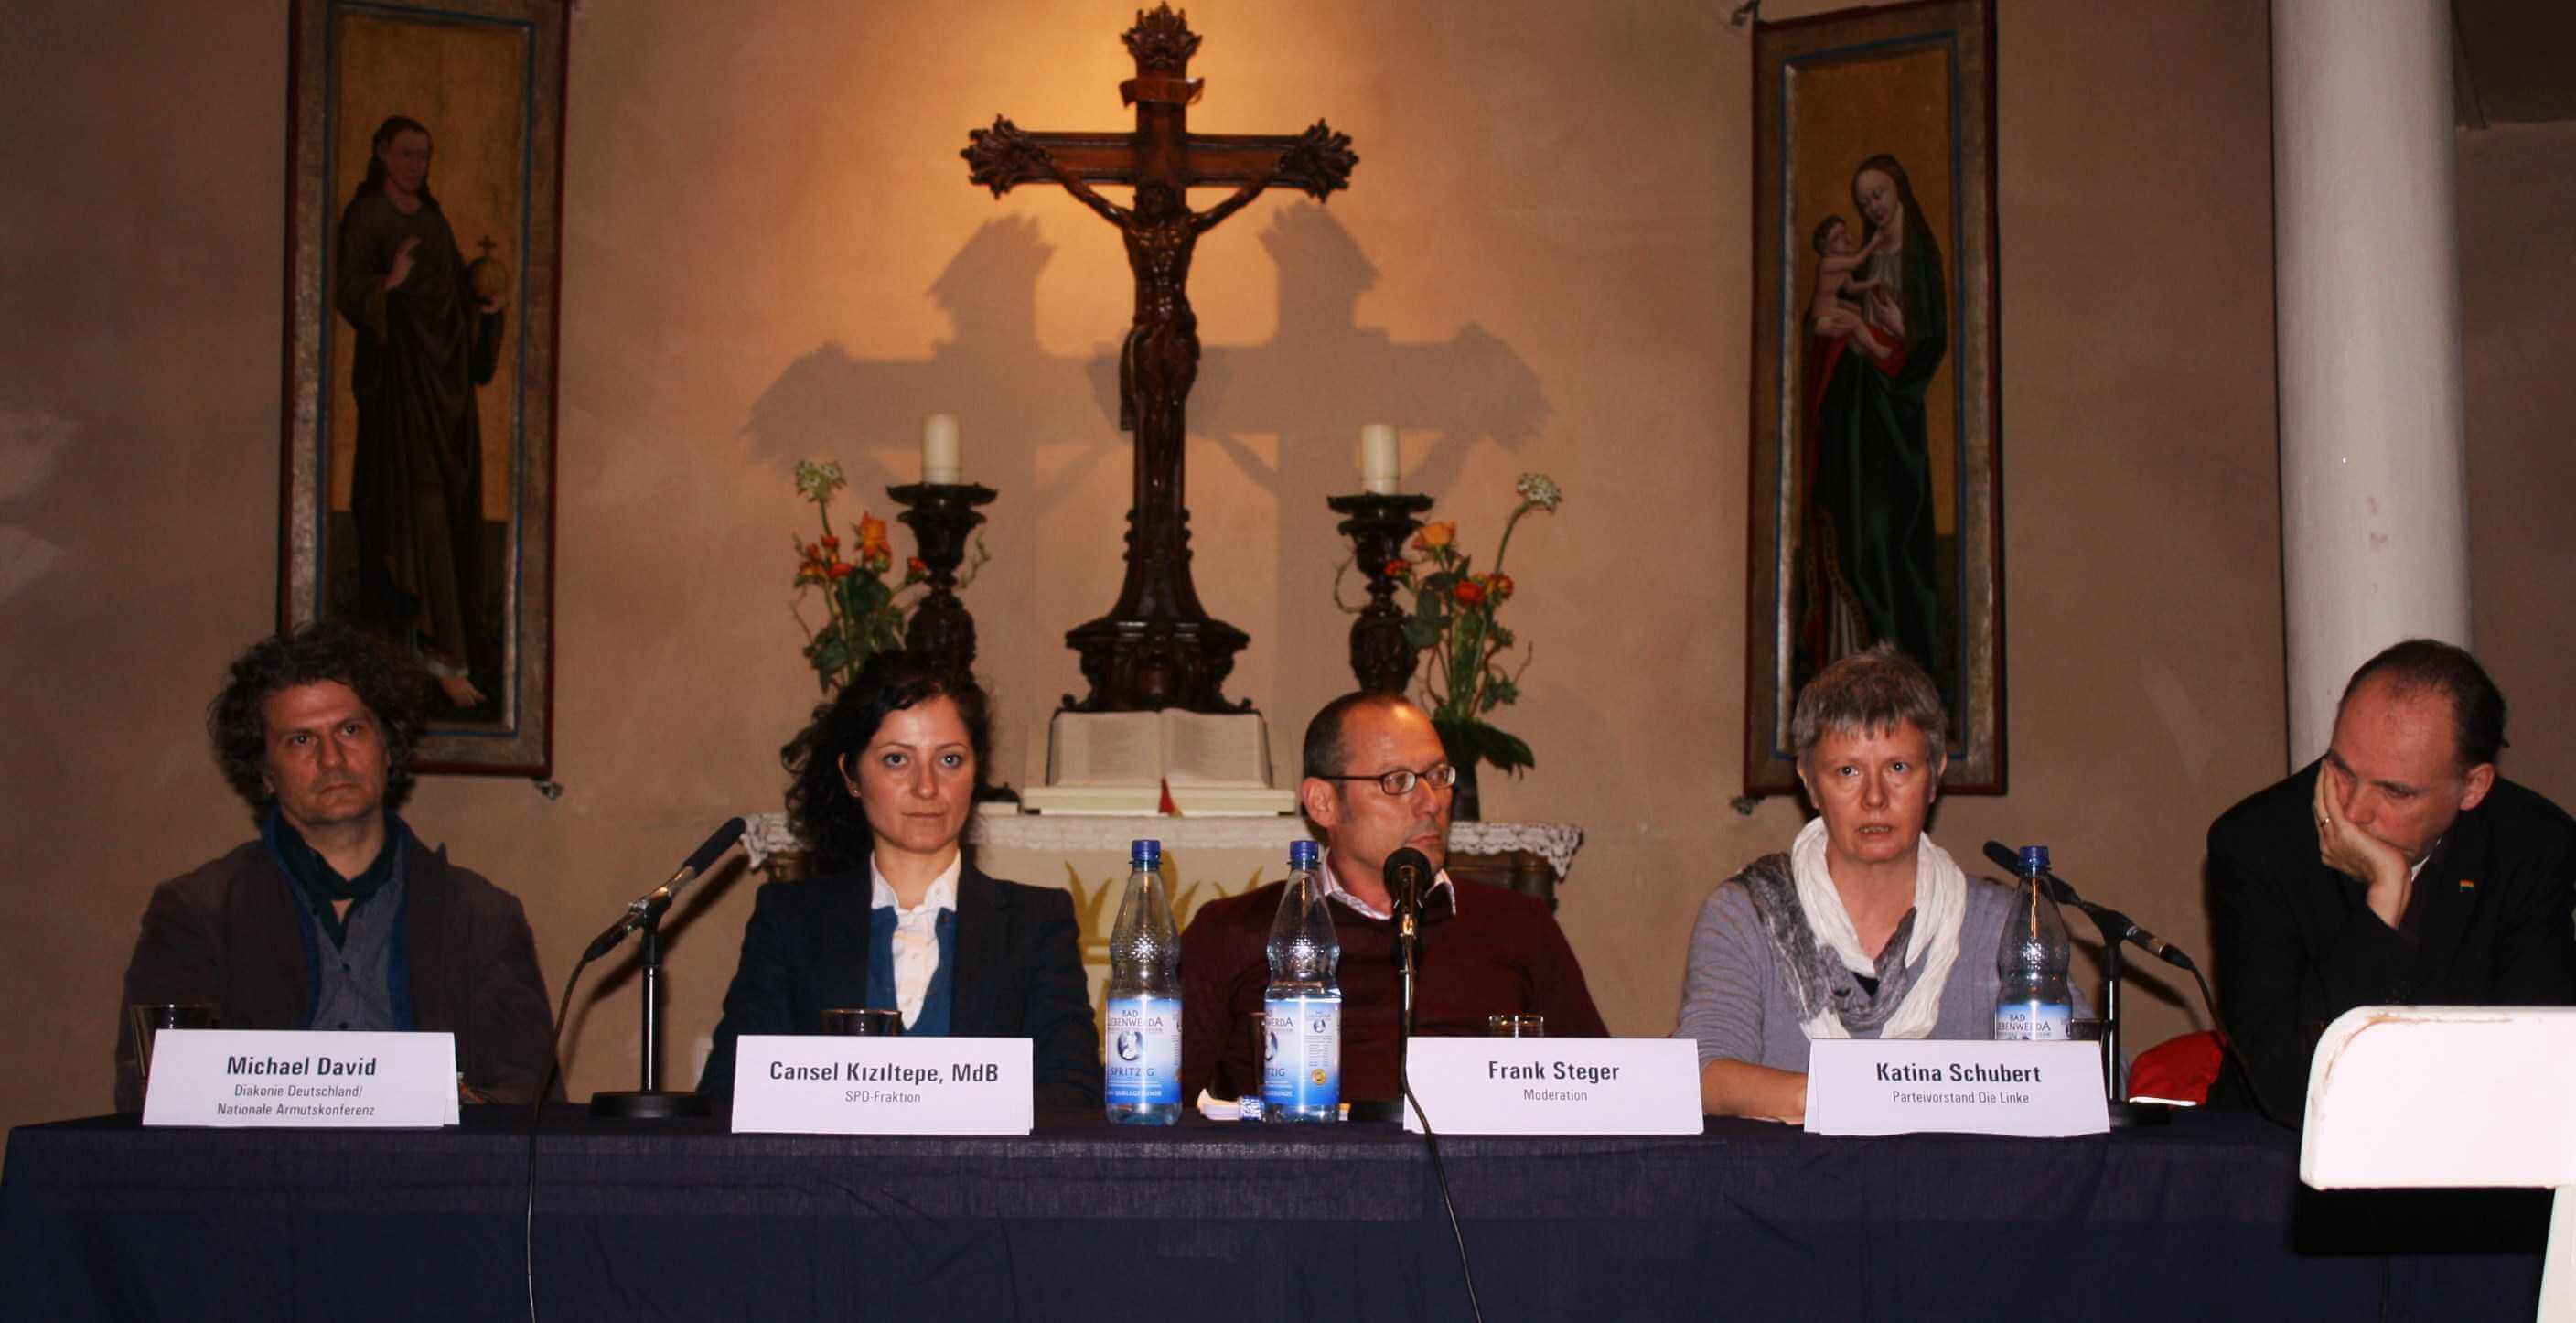 Solidarität und ein Mindesteinkommen: Politiker diskutierten in Zehlendorfer Kirche über Armut